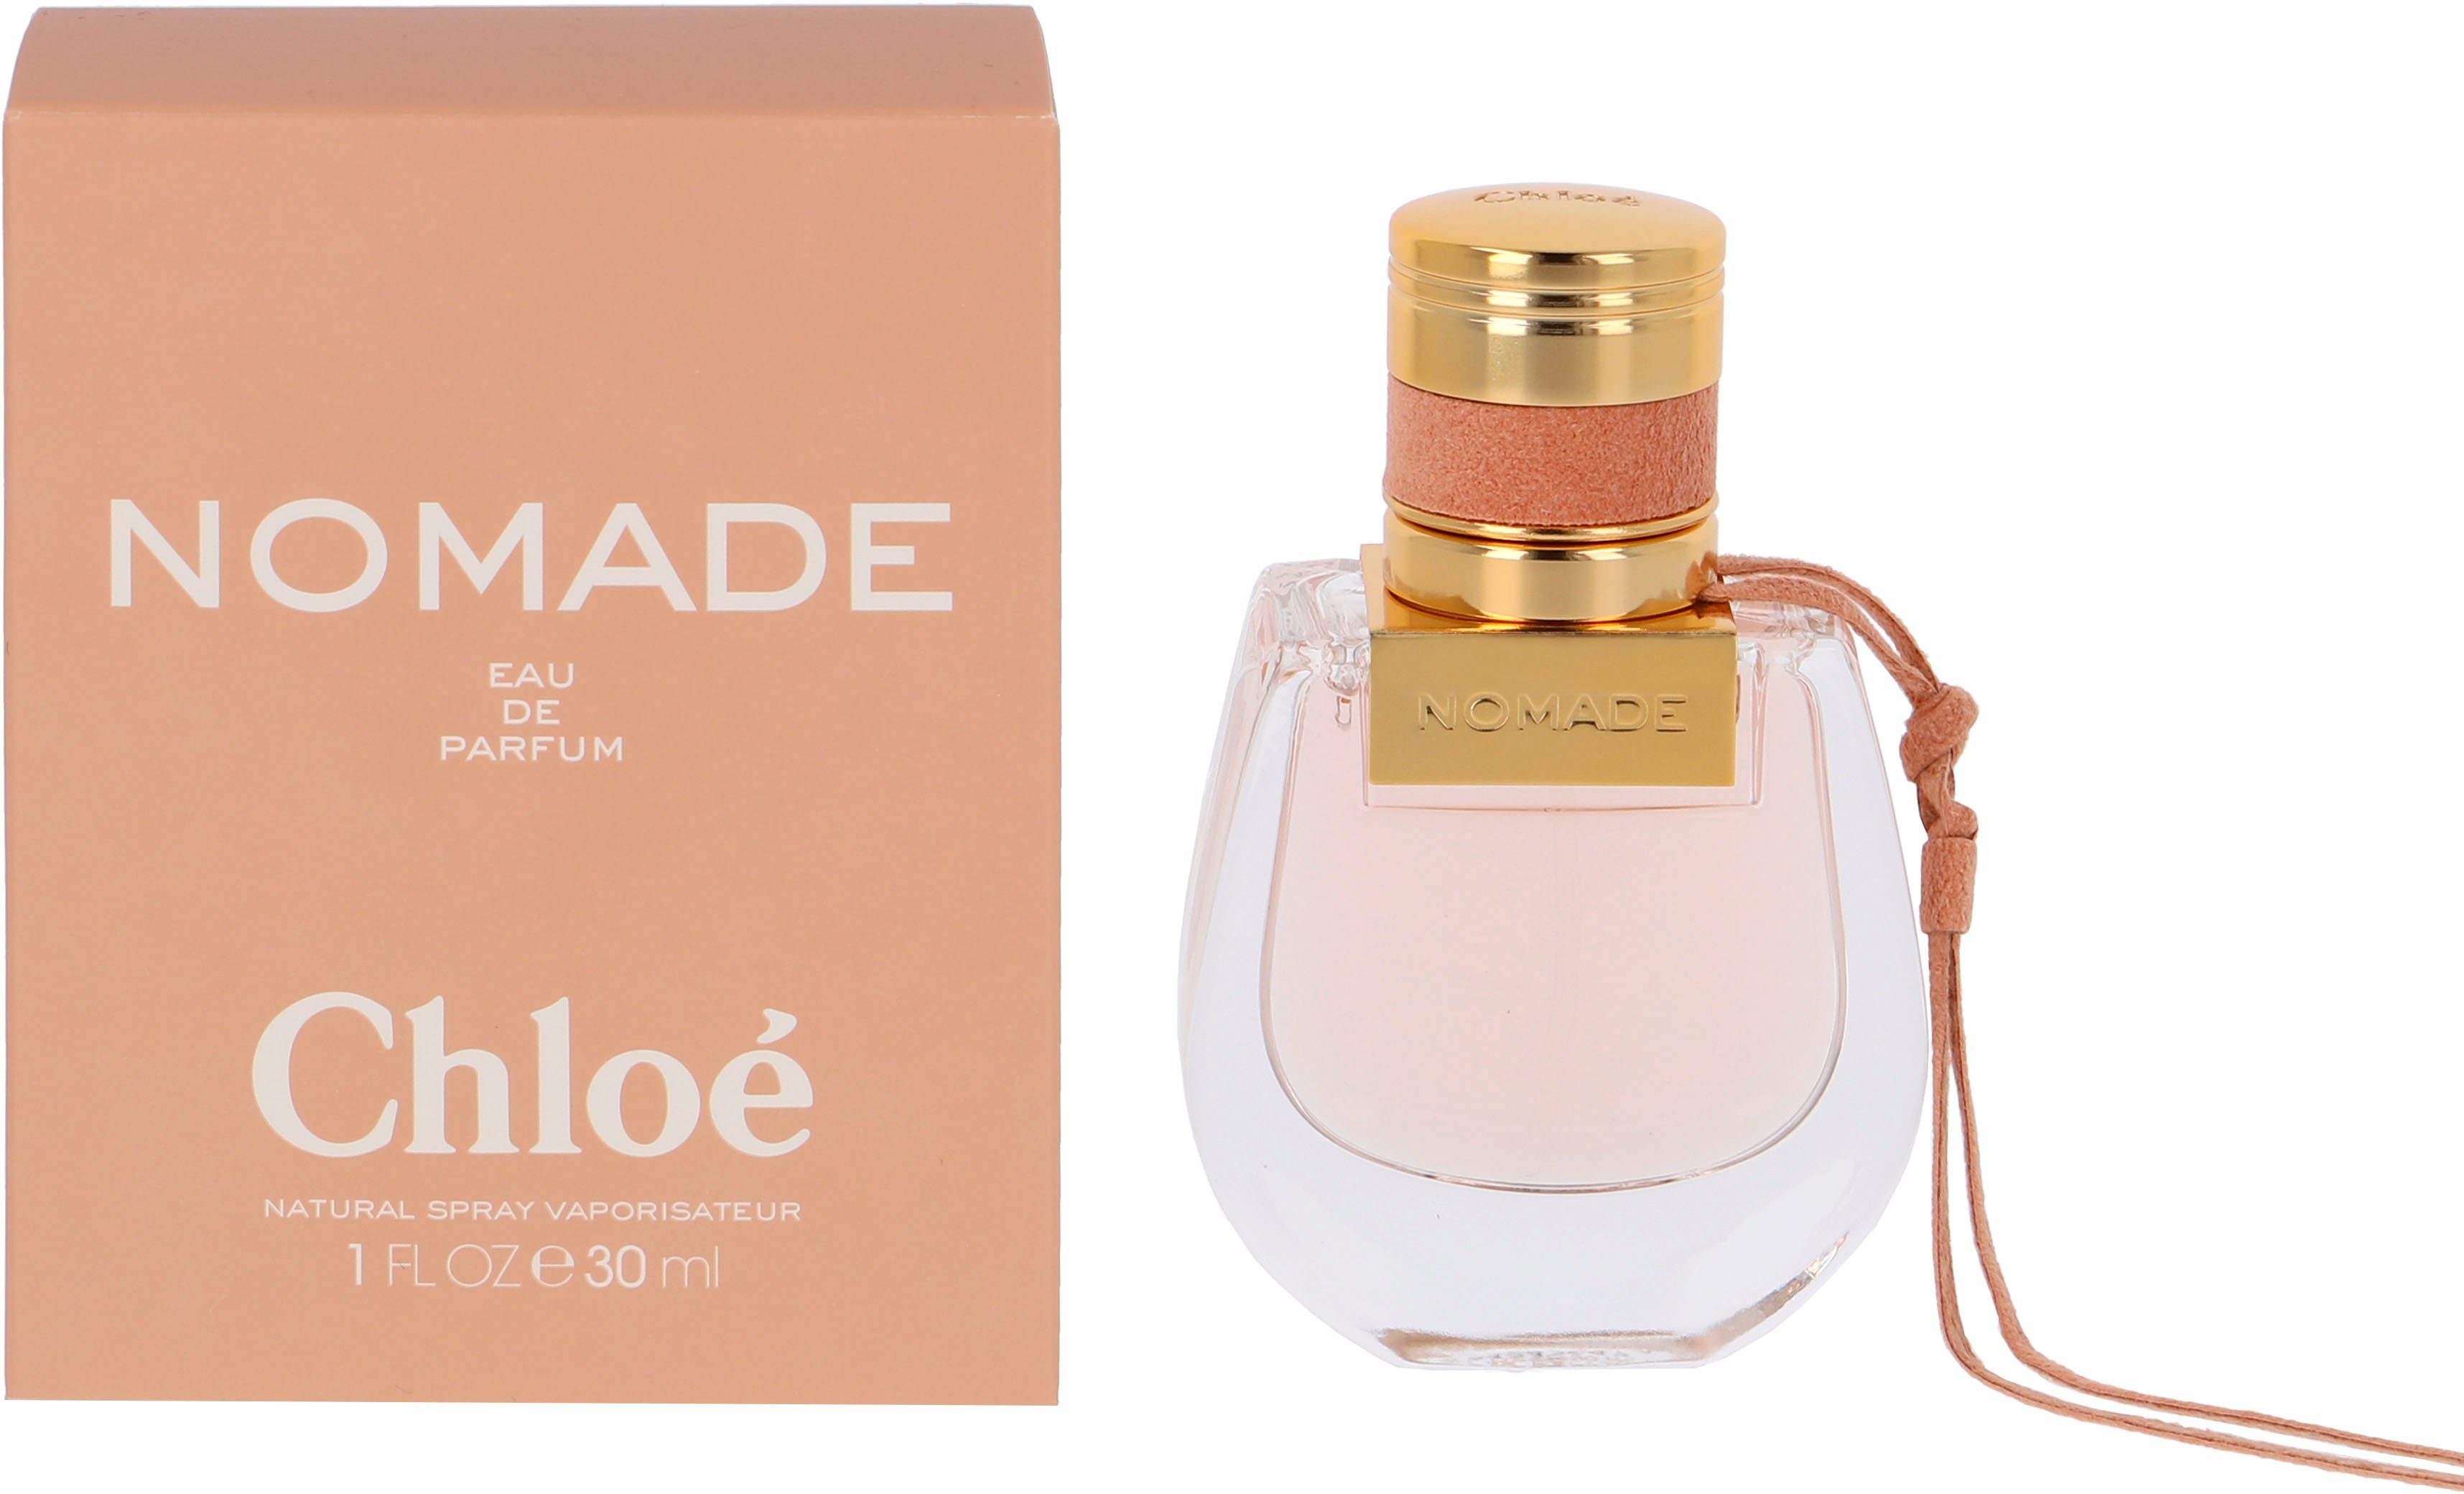 Chloé Eau de Nomade Parfum